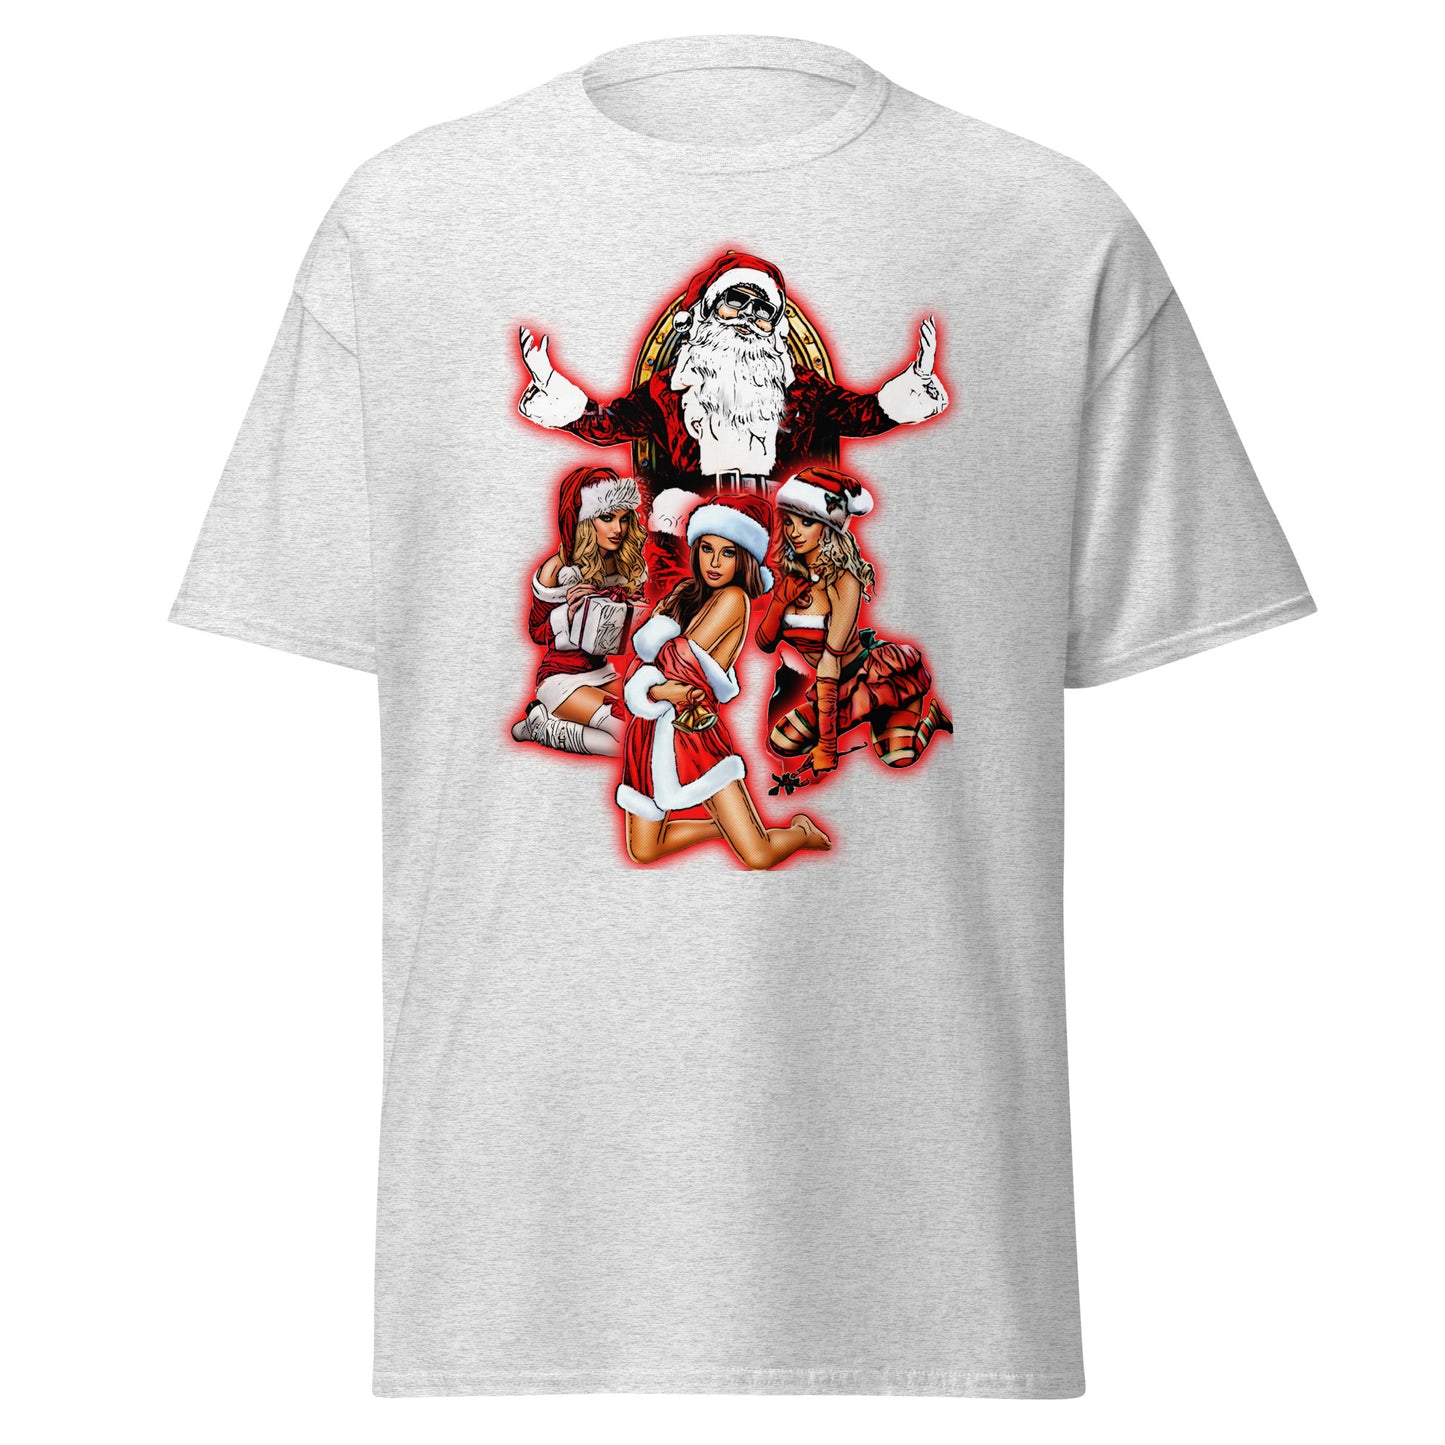 Pimp Santa T-Shirt - A Funky Festive Vibe